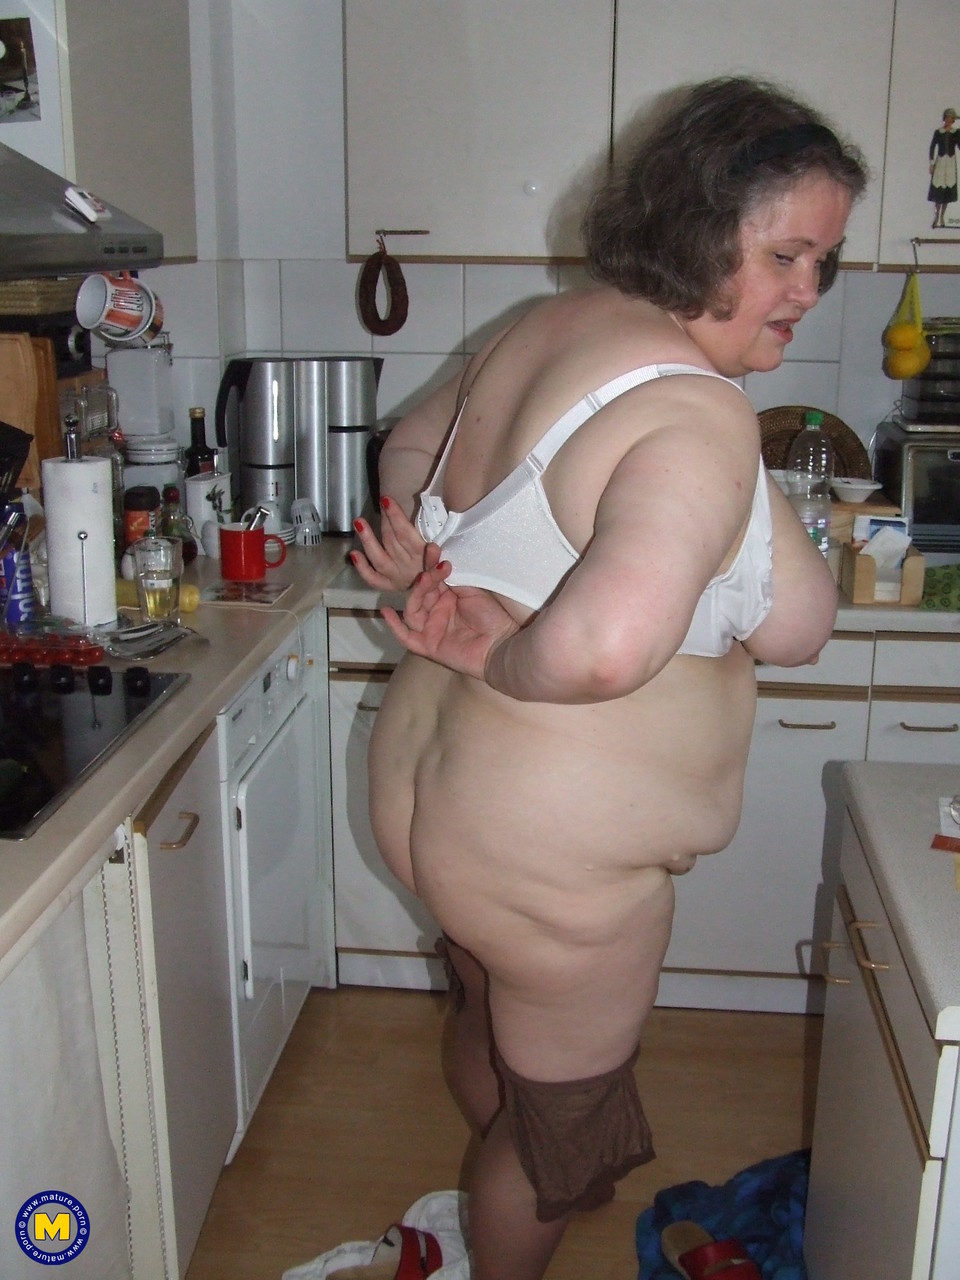 Fat mature housewife Birgid masturbates with a cucumber in the kitchen porno foto #423883232 | Mature NL Pics, Birgid, Granny, mobiele porno